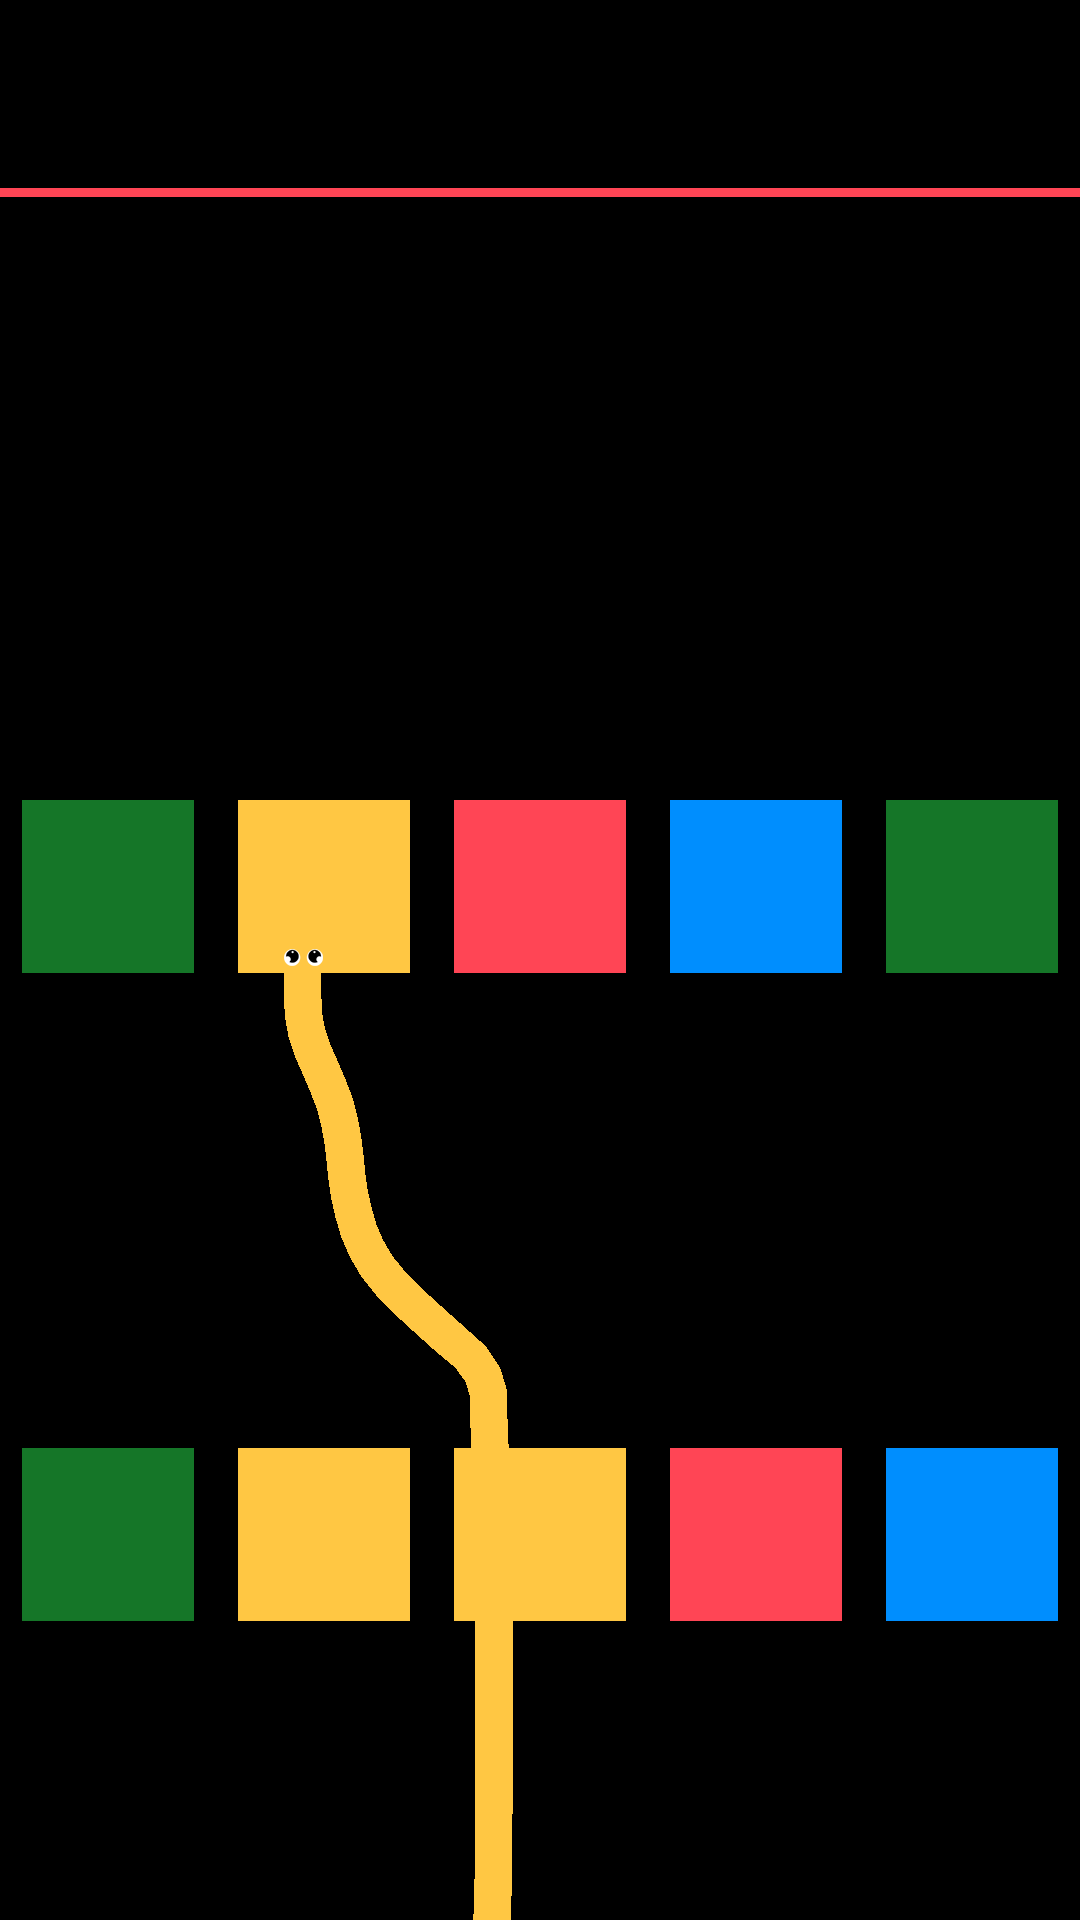 Snake Vs Colors screenshot game